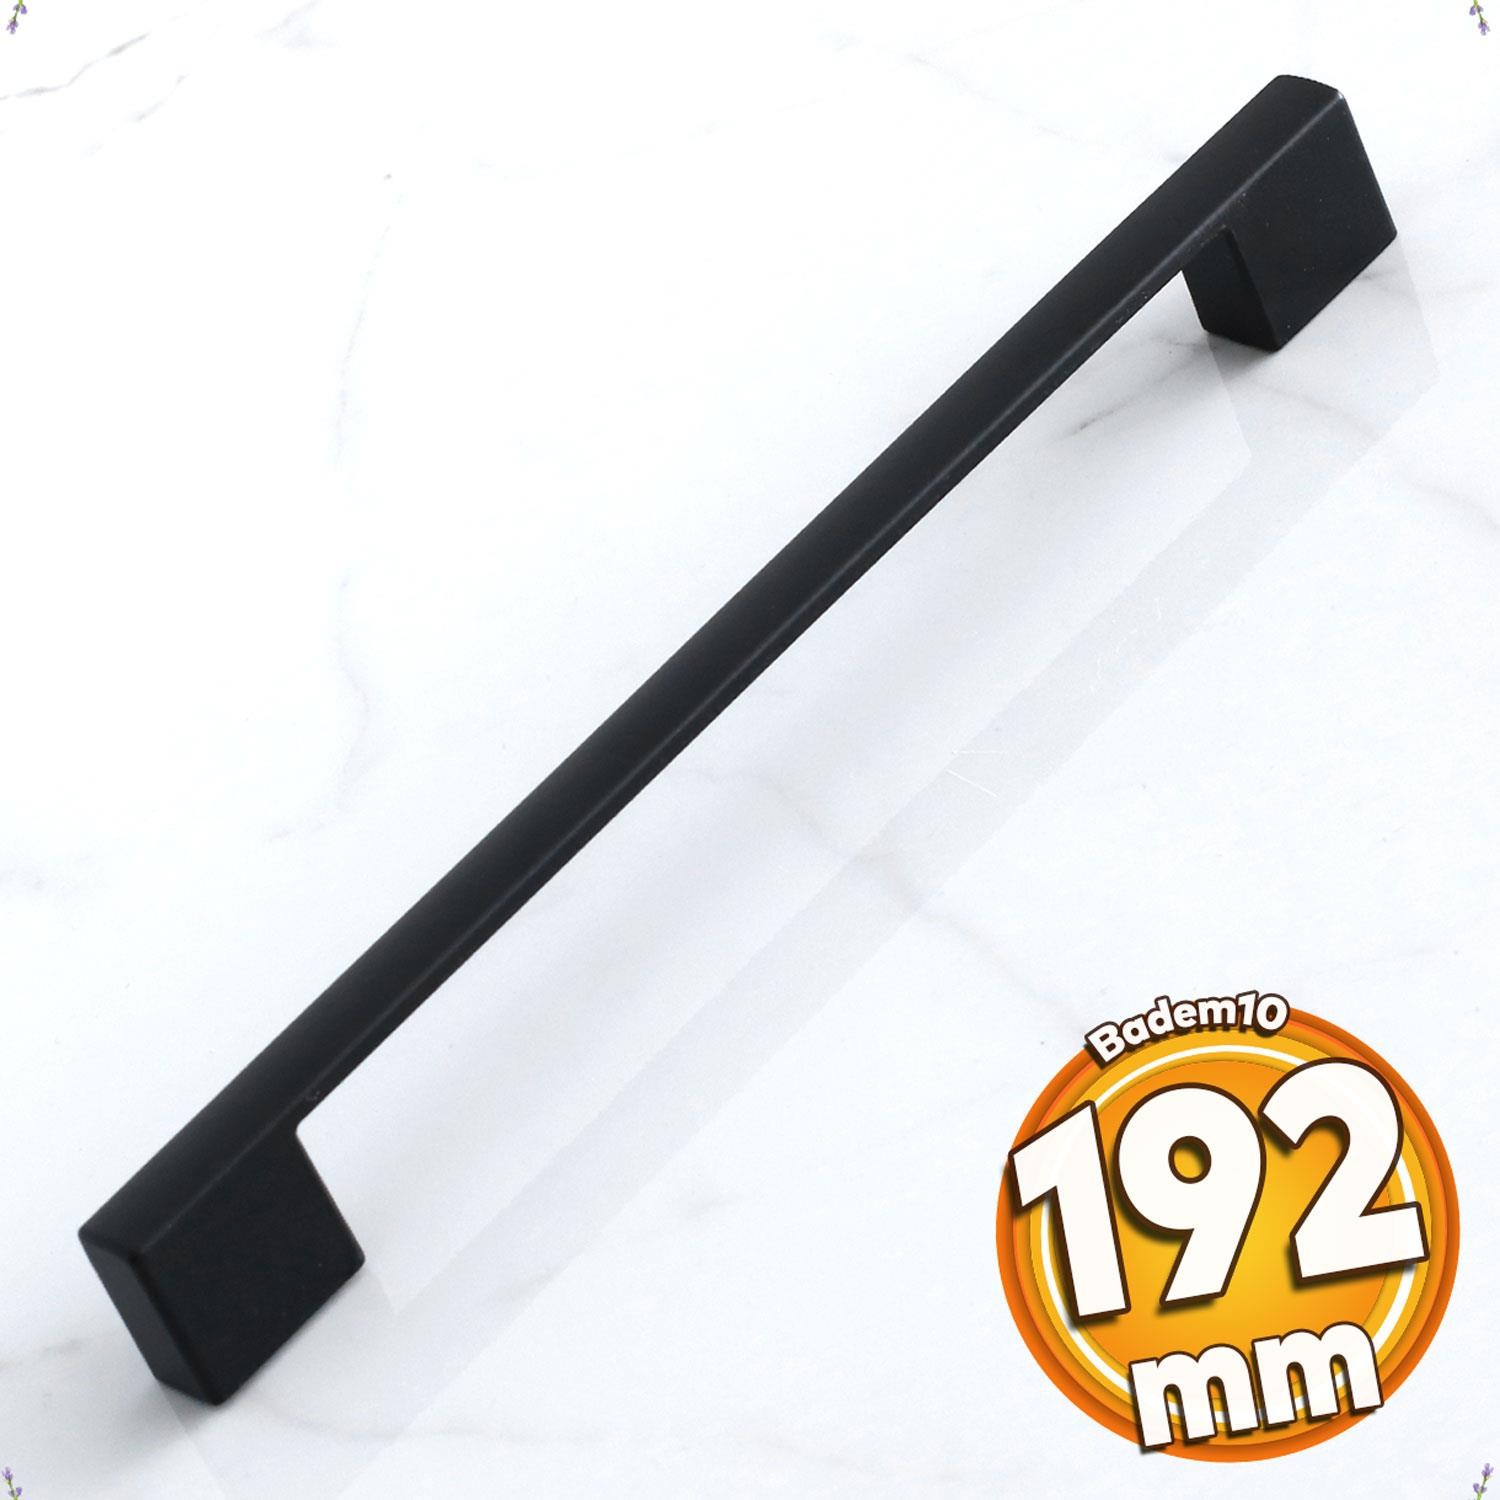 Kale 192 mm Siyah Kulp Metal Mobilya Çekmece Mutfak Kulpları Dolap Dolabı Kapak Kulbu Kulpu 19.2 cm